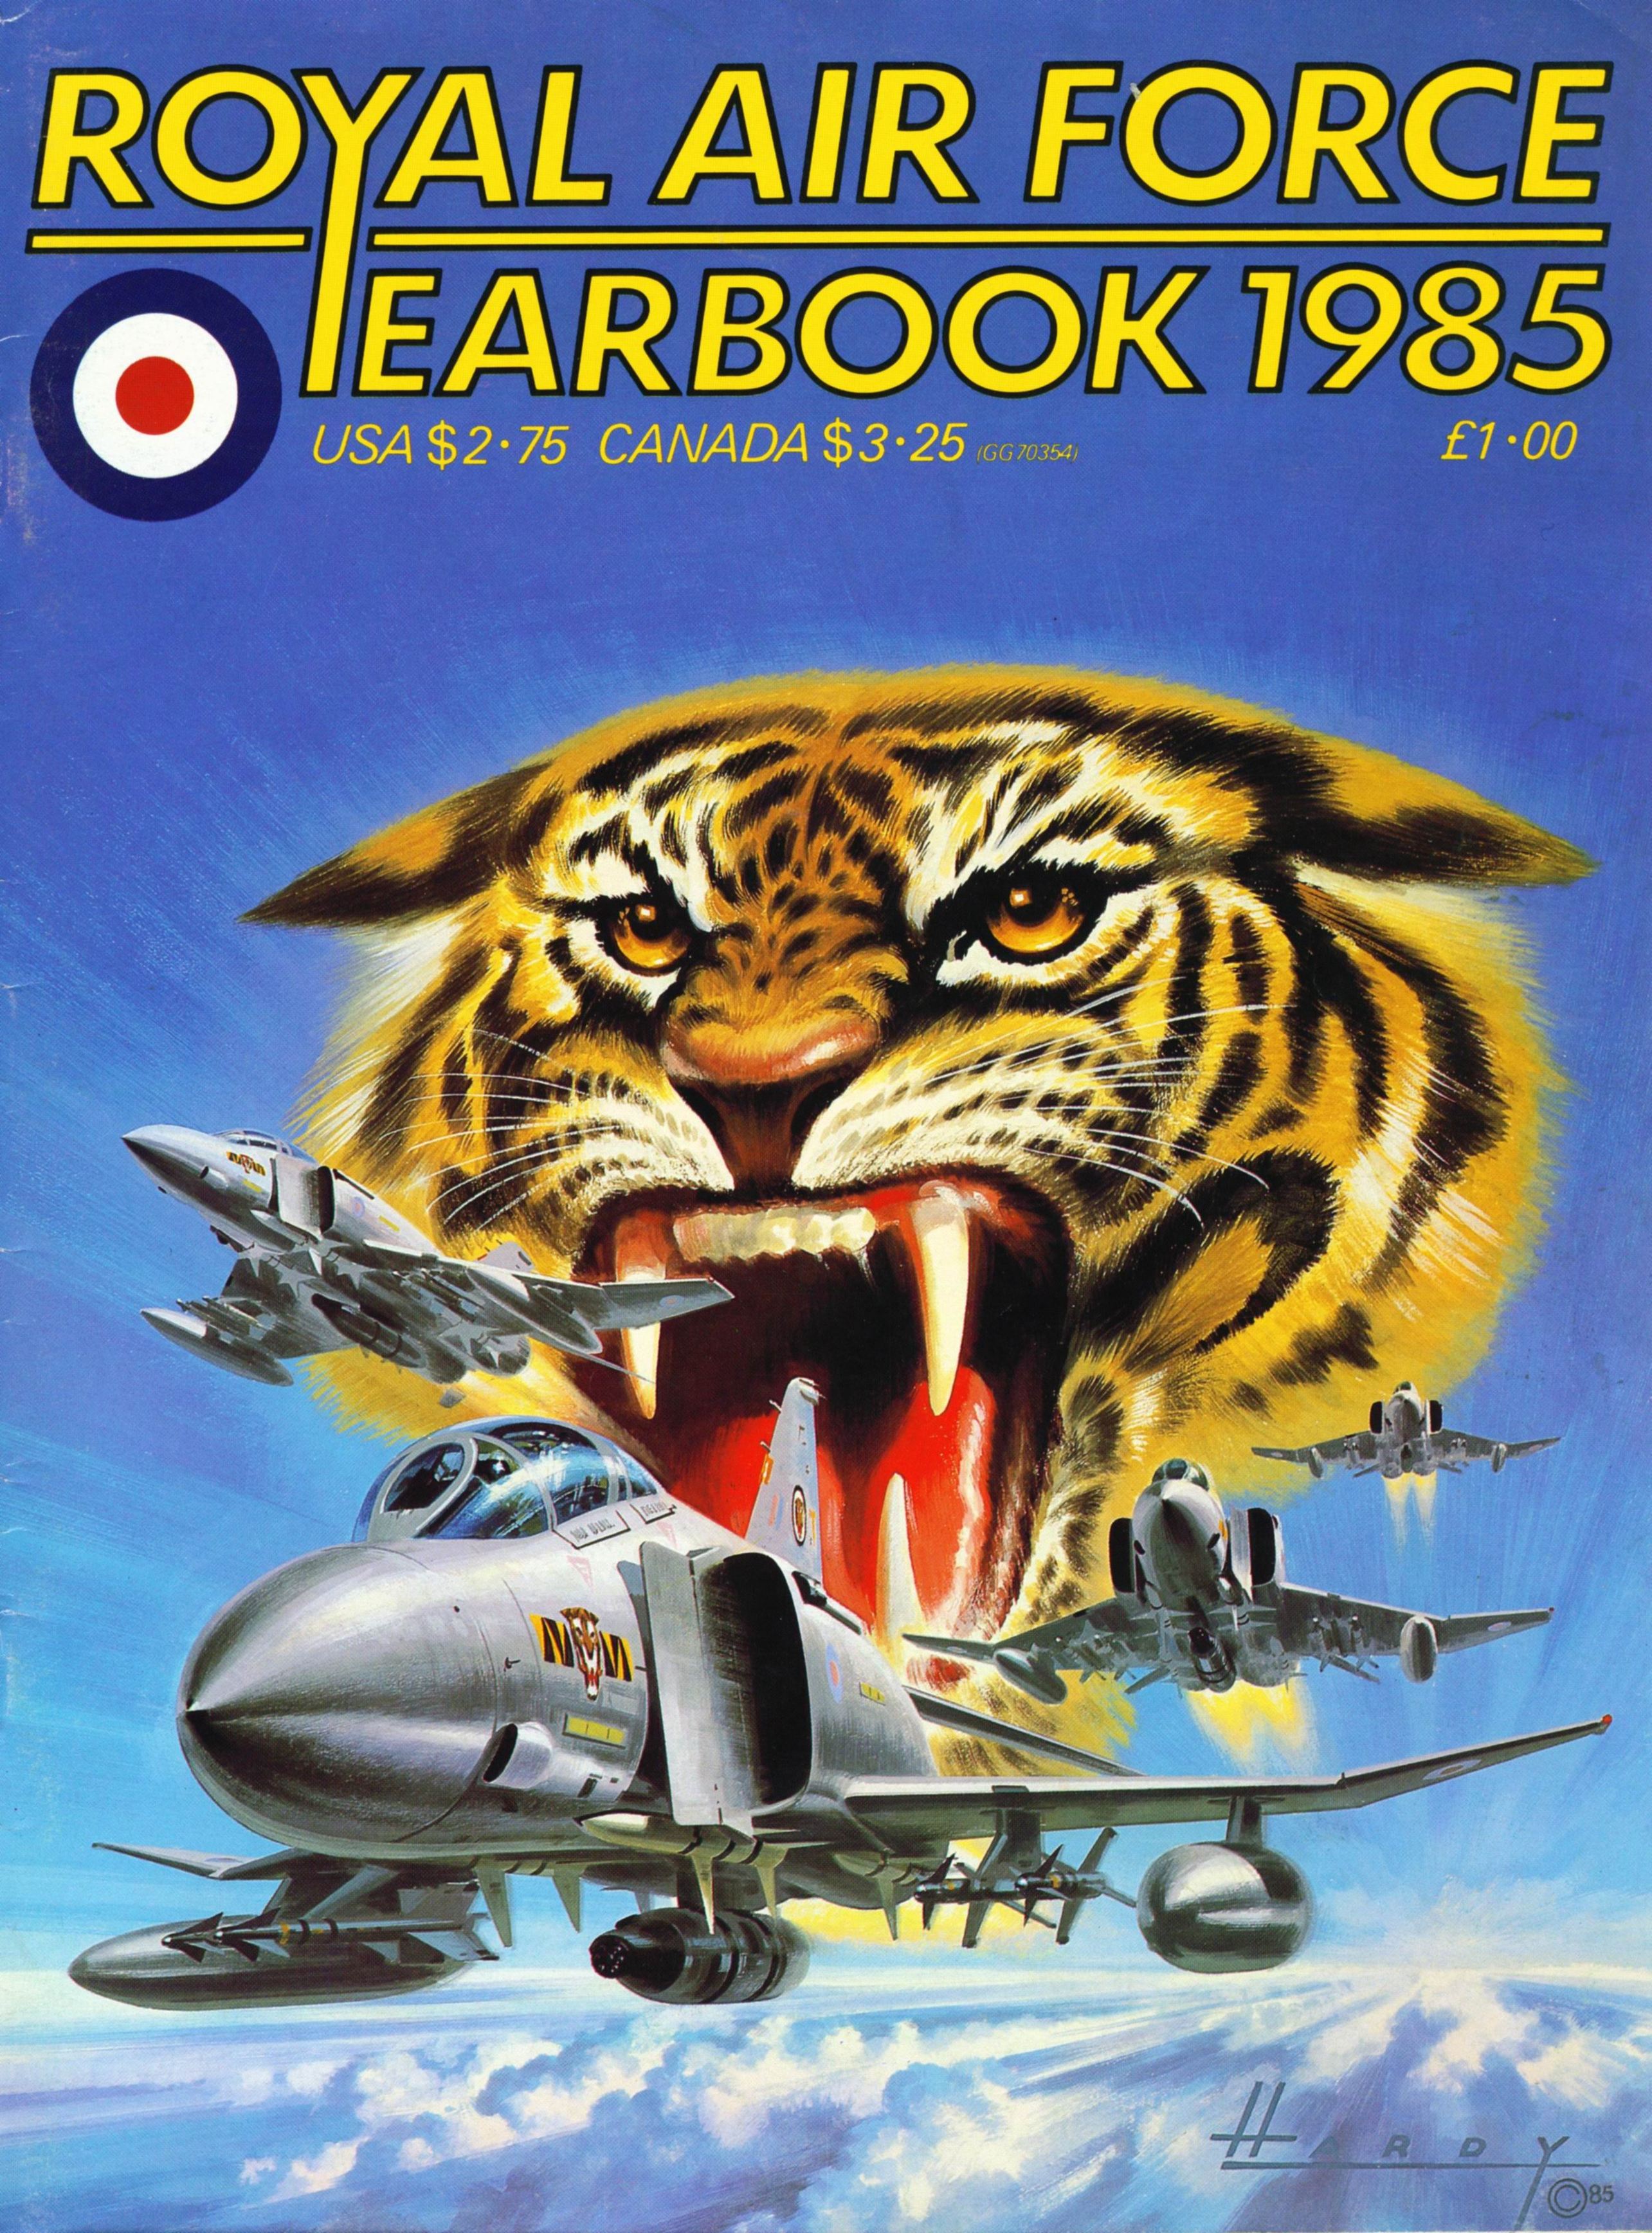 Wydawnictwa anglo i rosyjskojęzyczne - Royal Air Force Yearbook 1985.jpg